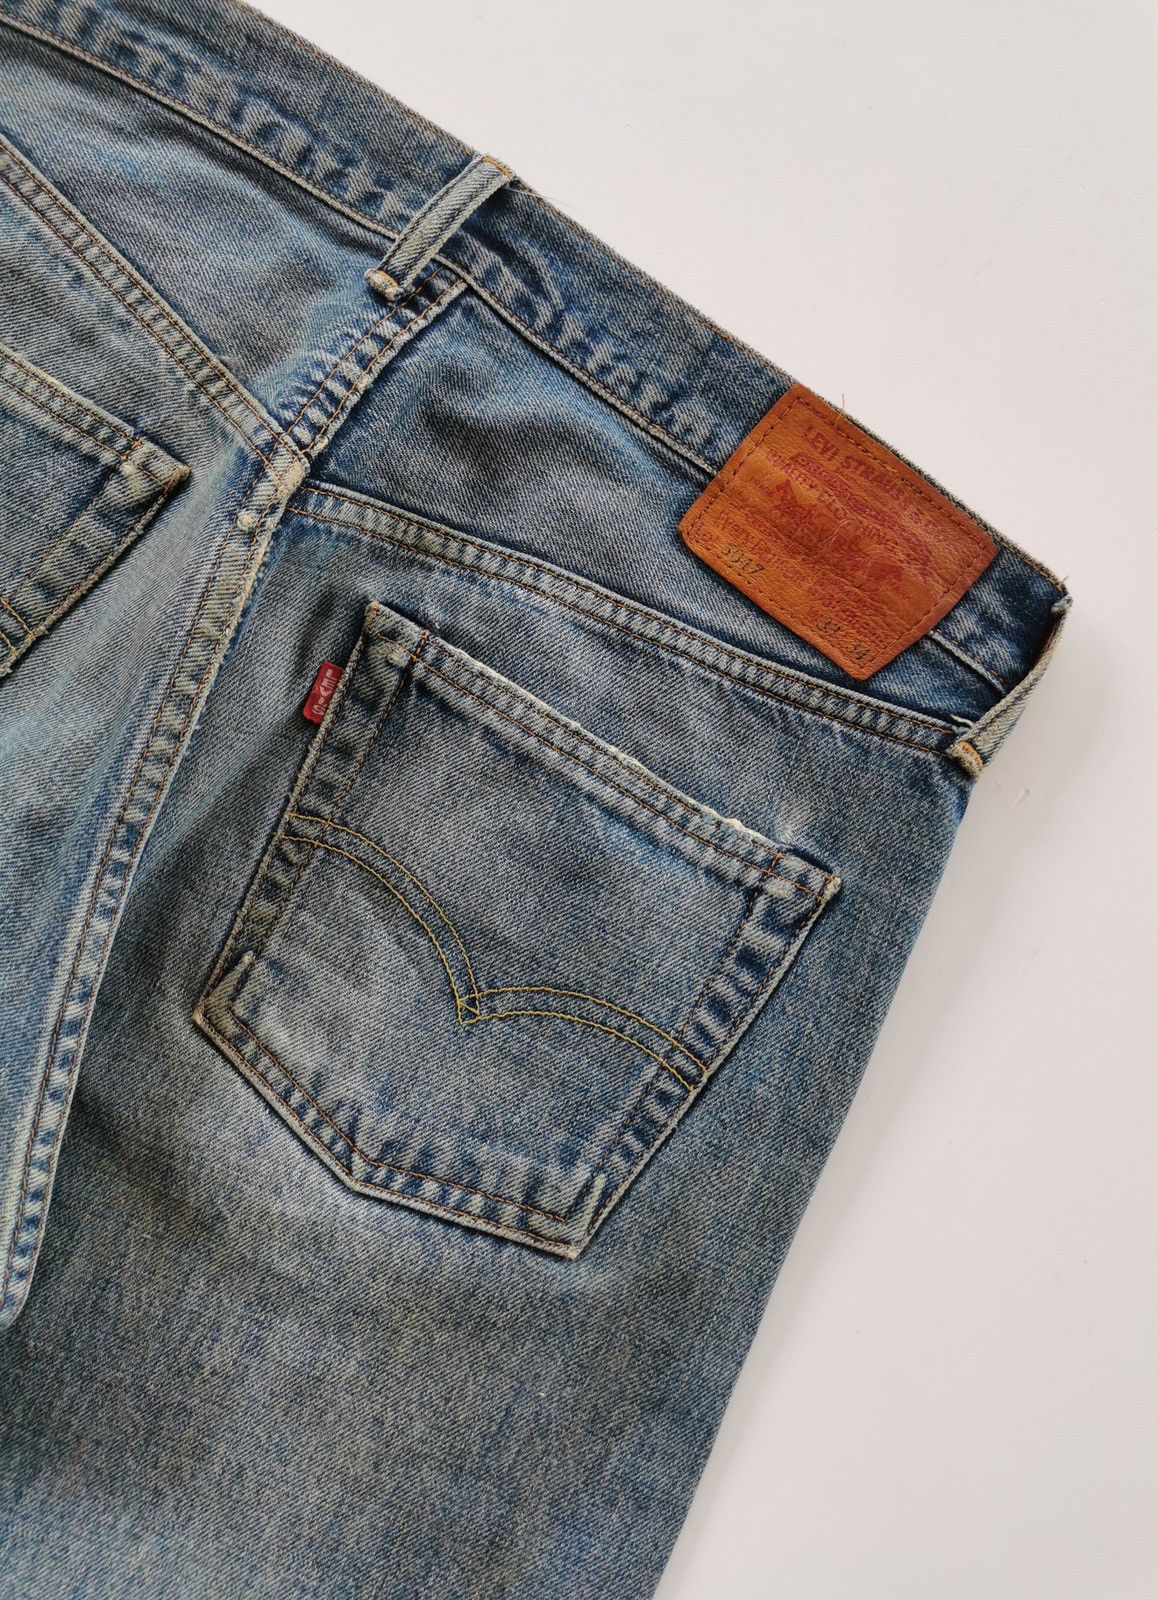 Levi's Vintage Levis 504Z - XX Selvedge Jeans | Grailed